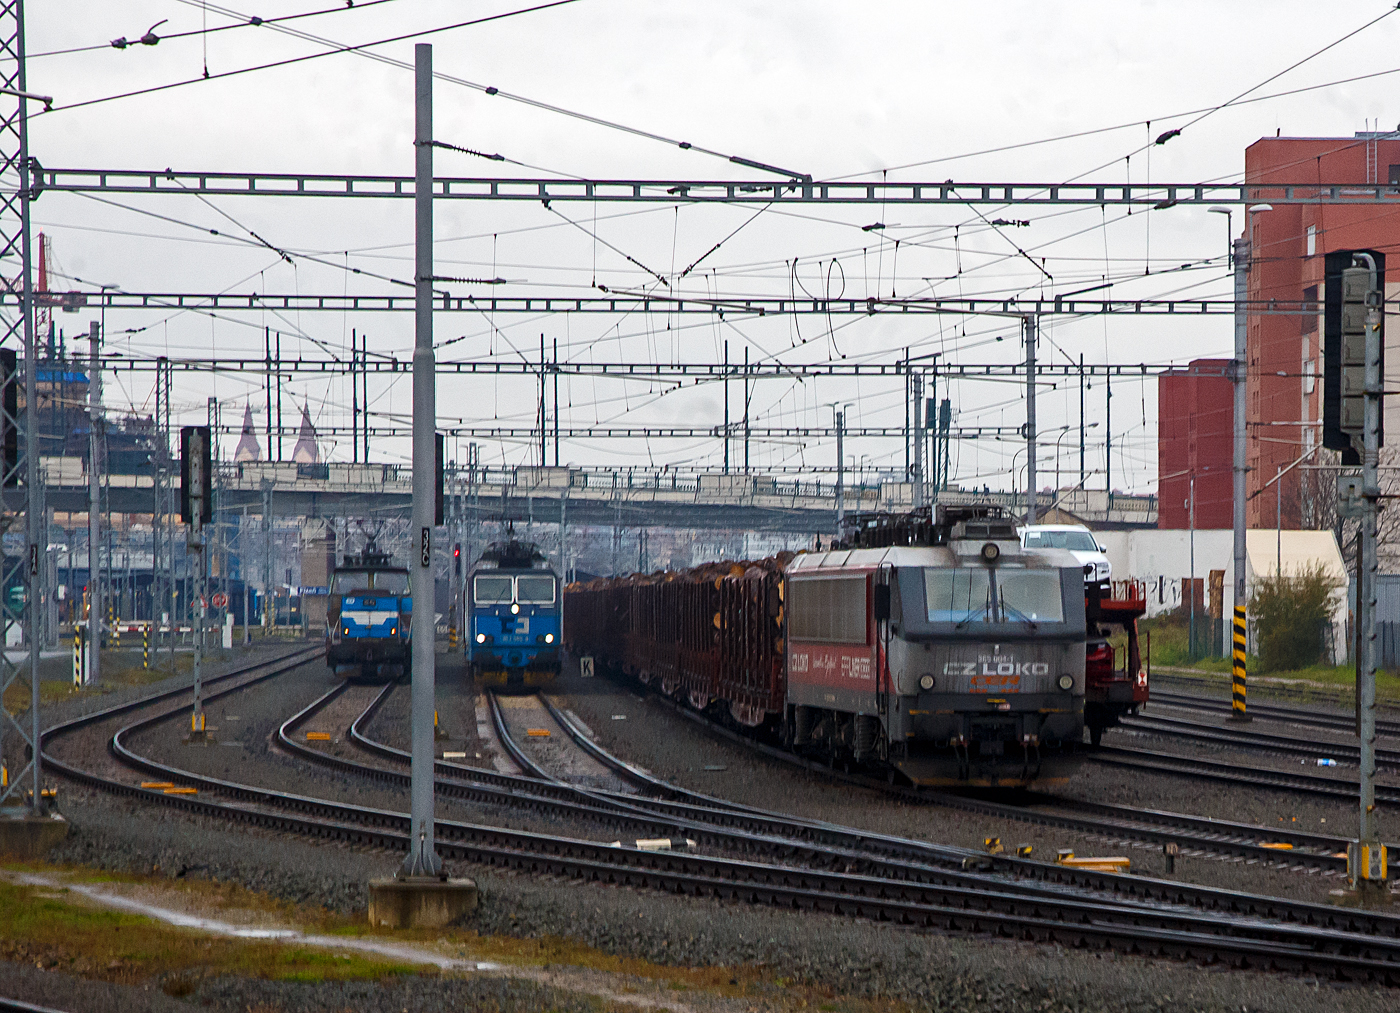 Die an die ungarische CER Cargo vermietet  CZ Loko 365 004-1 (CZ-CZL 91 54 7 365 004-1), eine CZ Loko „Effiliner 3000“, ex SNCB HLE 12, steht am 24.11.2022 bei Pilsen (Plzeň) mit einem Stammholzzug (aufgenommen aus einem alex-Zug).

Und links stehen noch die ČD Cargo 363 503-9 (CZ ČDC 91 54 7 363 505-9) mit einem Gterzug und die elektrische Rangierlokomotive ČD 210 021-2 (CZ ČD 91 54 7 210 021-2) mit einem Personenzug.
